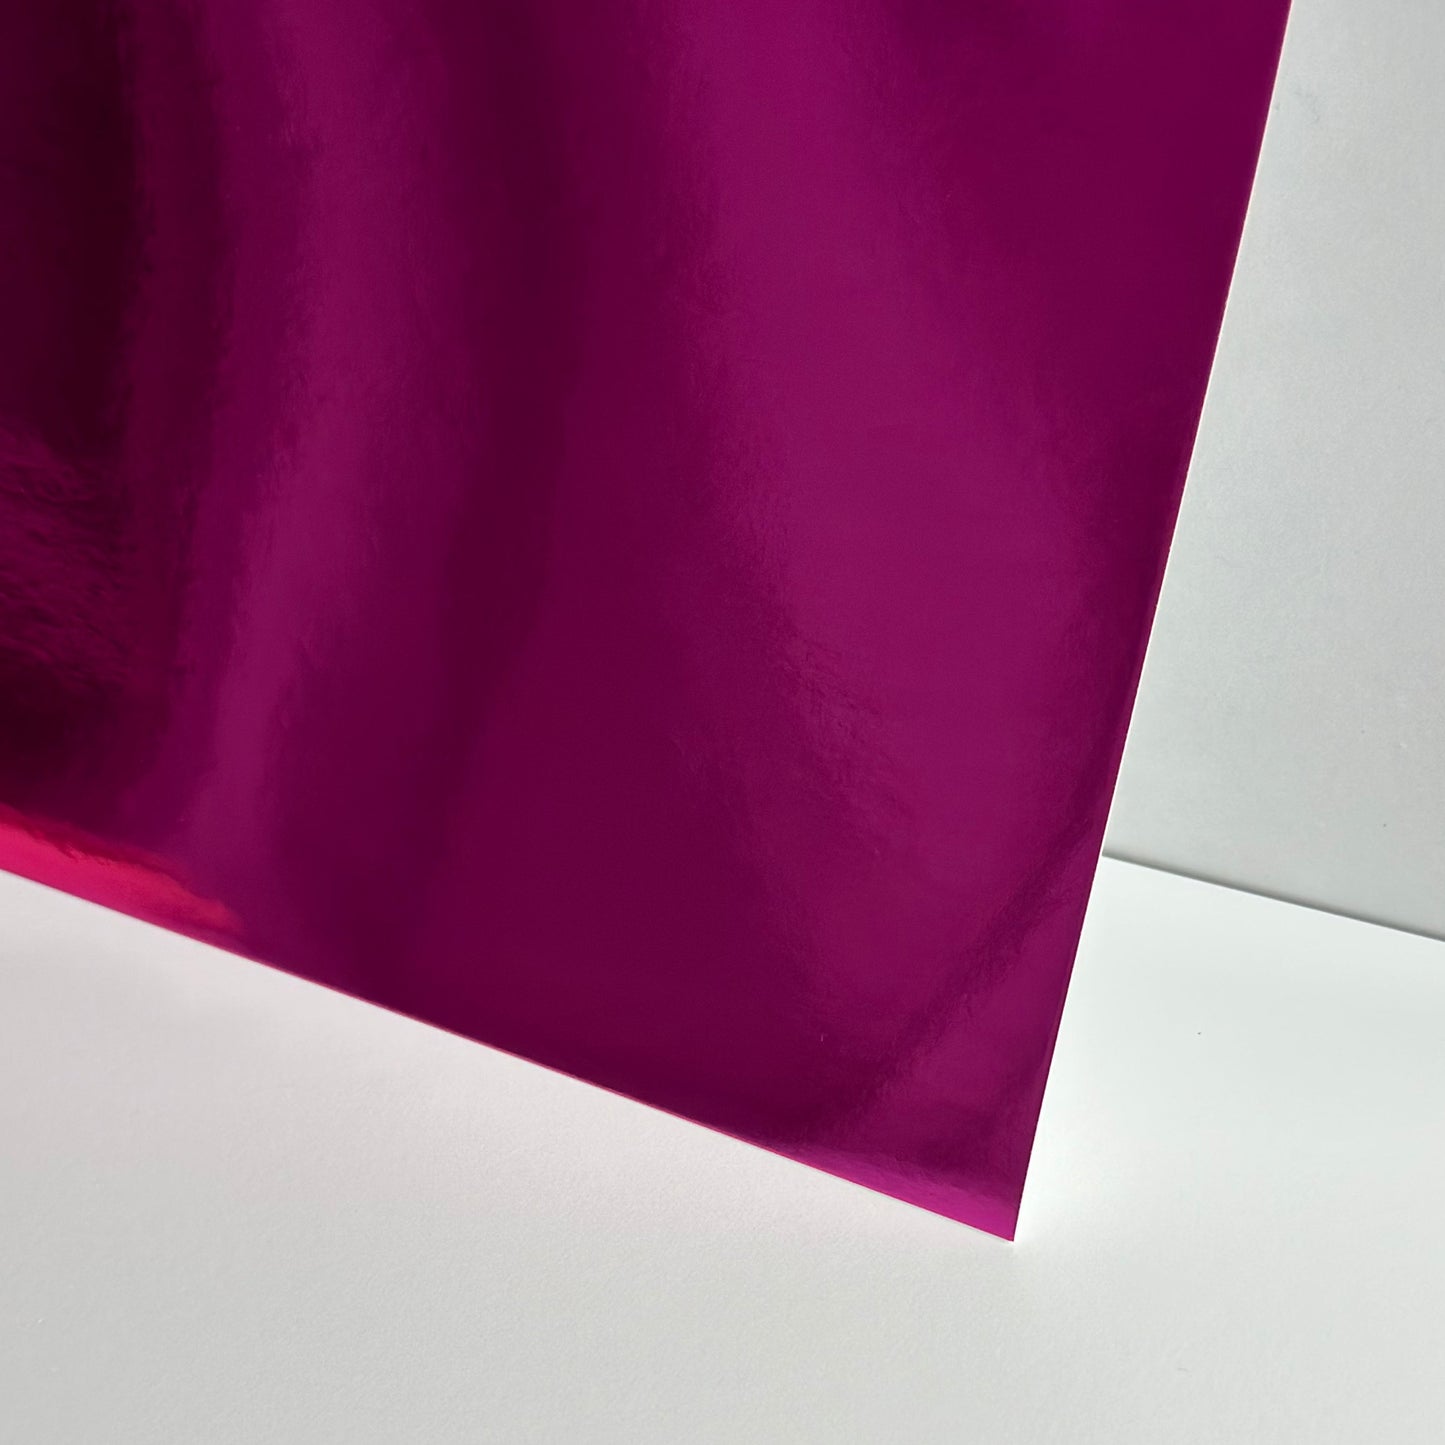 Pink Metallic Card Stock - SINGLE SHEET